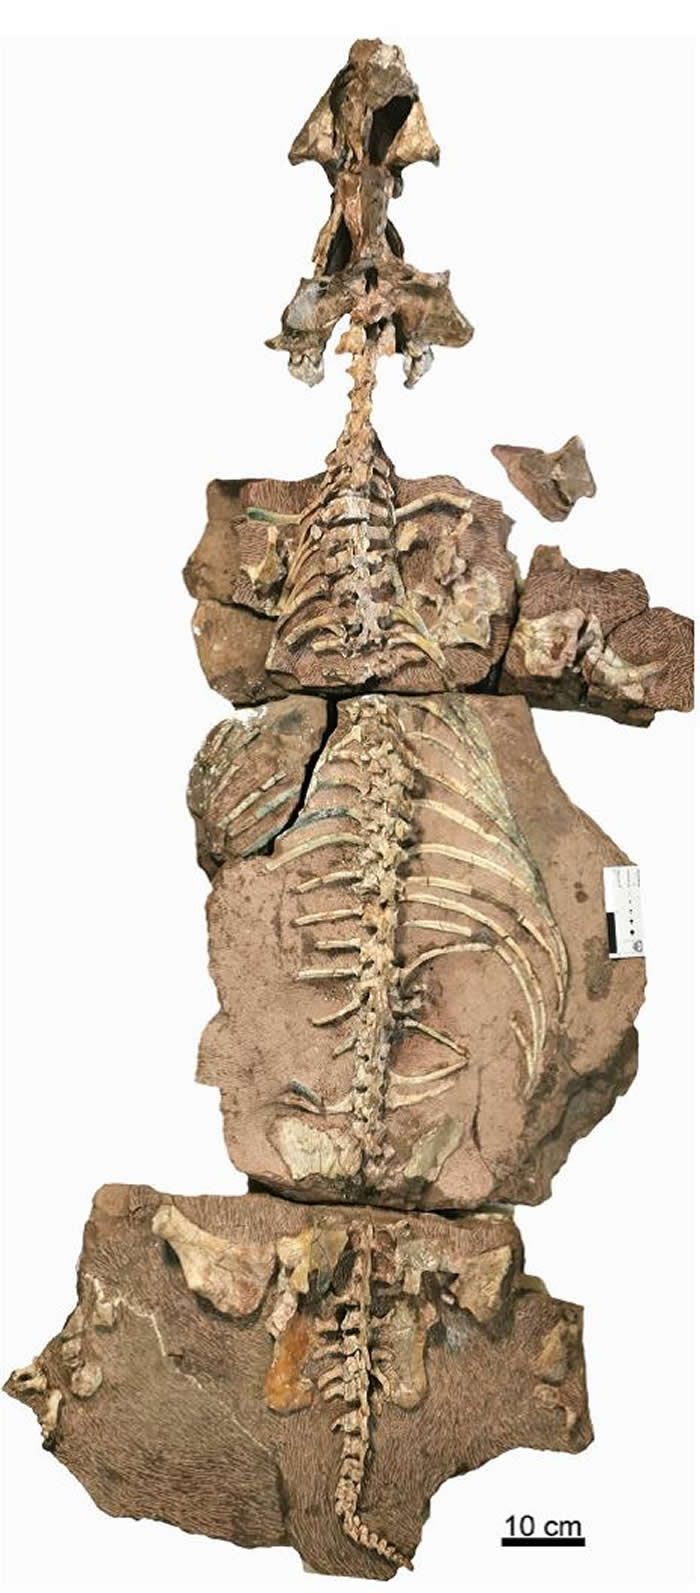 内蒙古大青山动物群发现吐鲁番兽属新种化石“九峰吐鲁番兽”